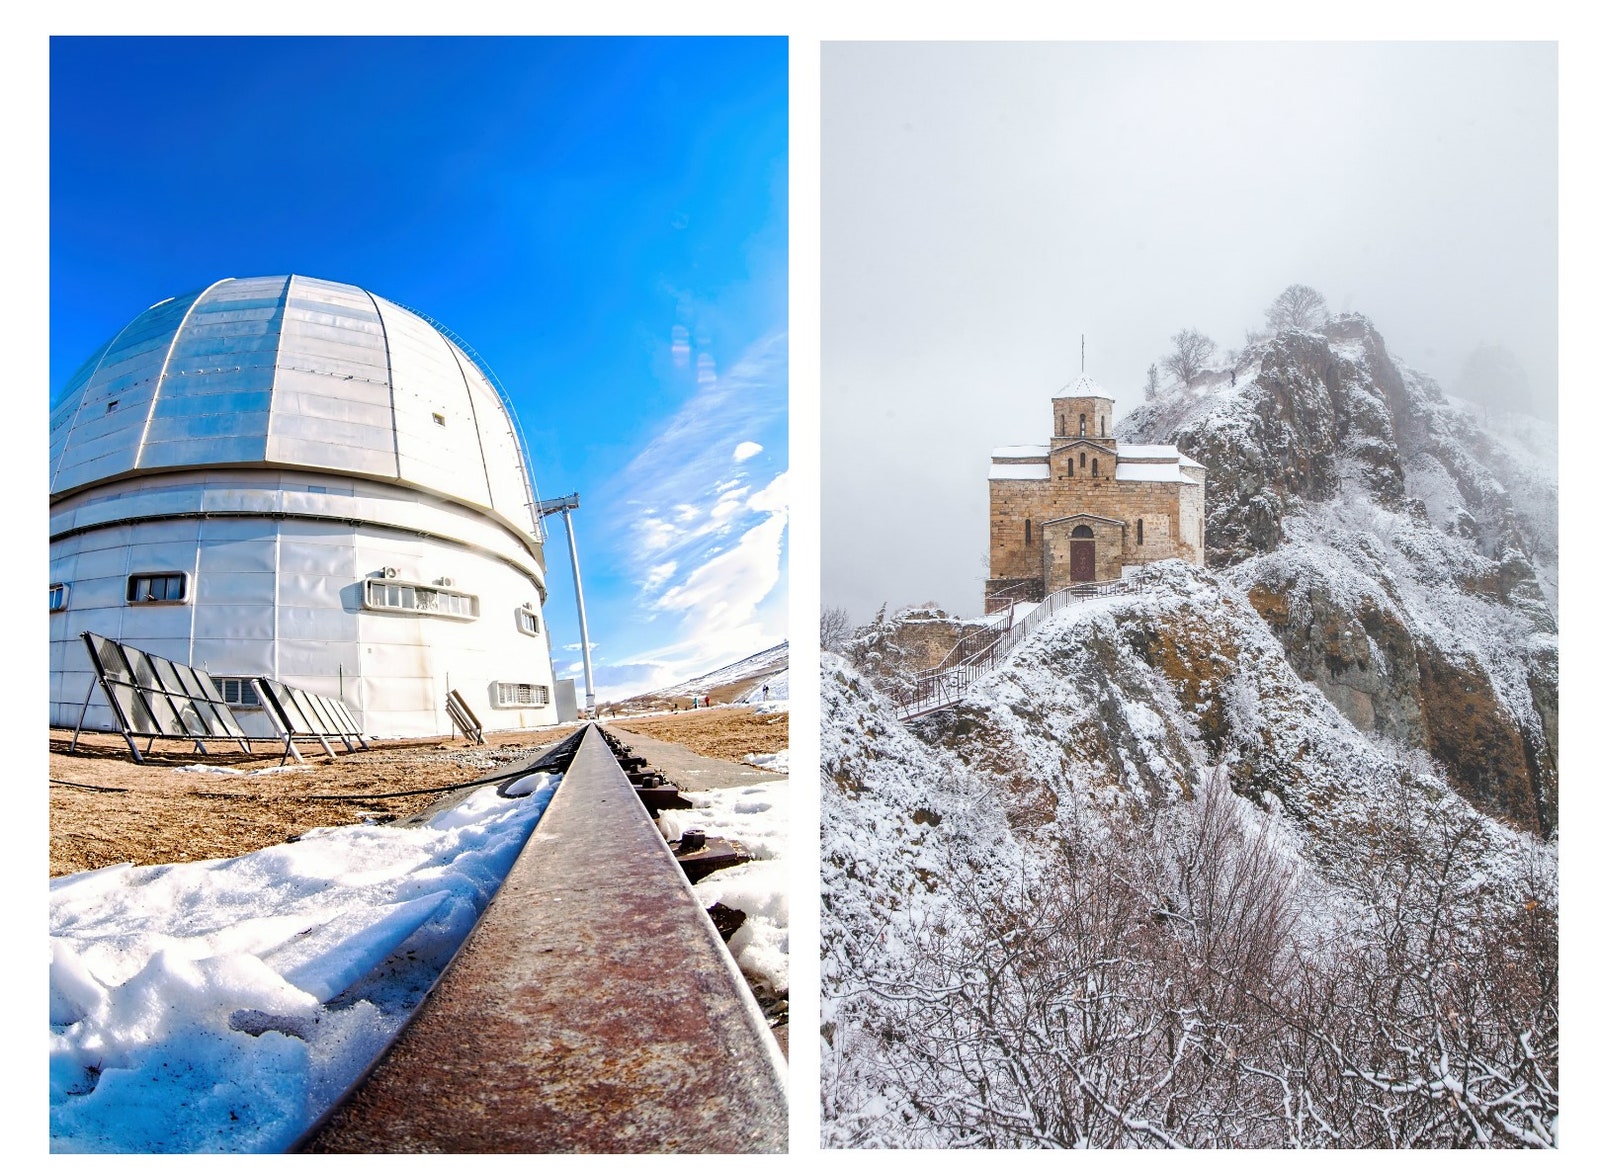 Слева Специальная астрофизическая обсерватория РАН. Справа Георгиевский храм на горе Шоана.